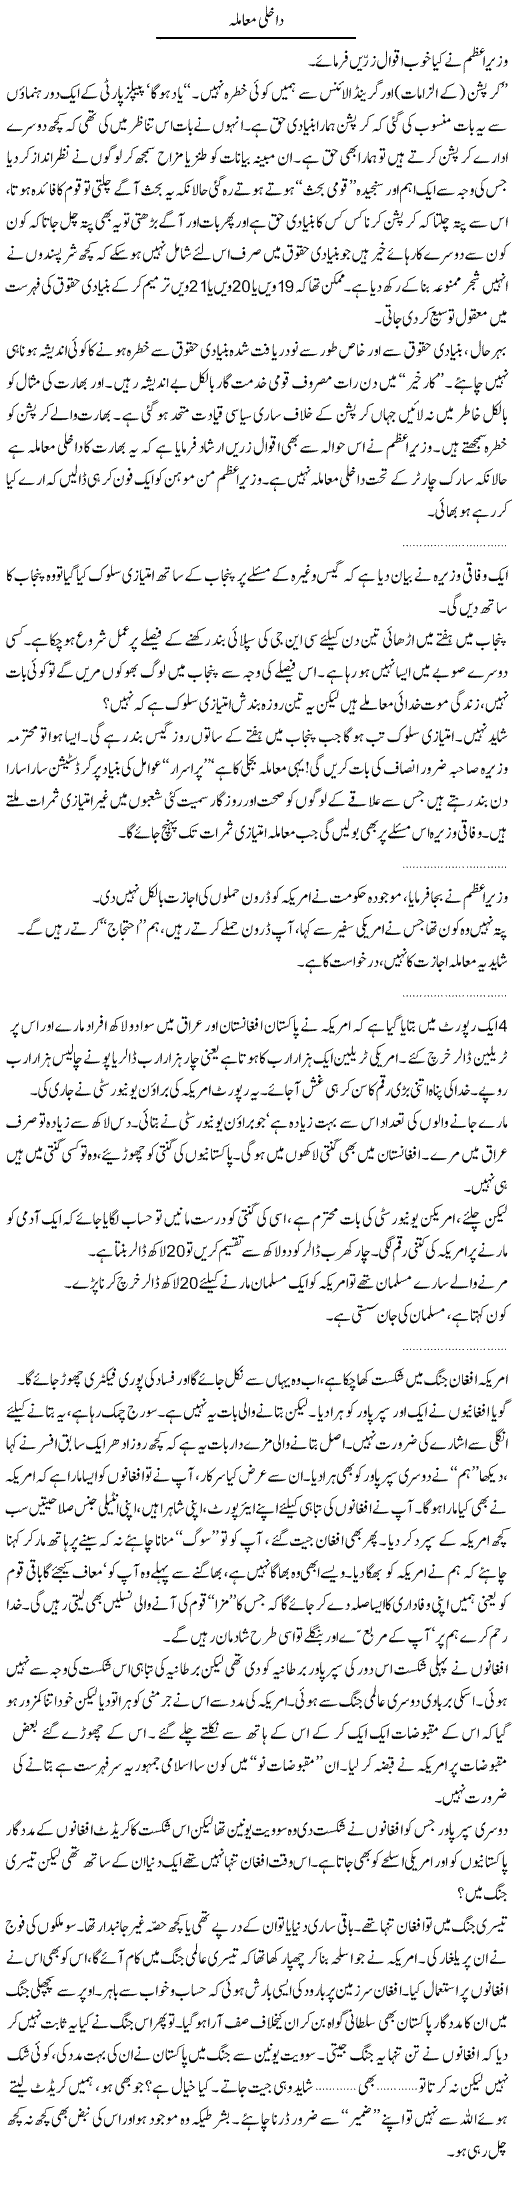 Mr Geelani Express Column Abdullah Tariq 7 July 2011